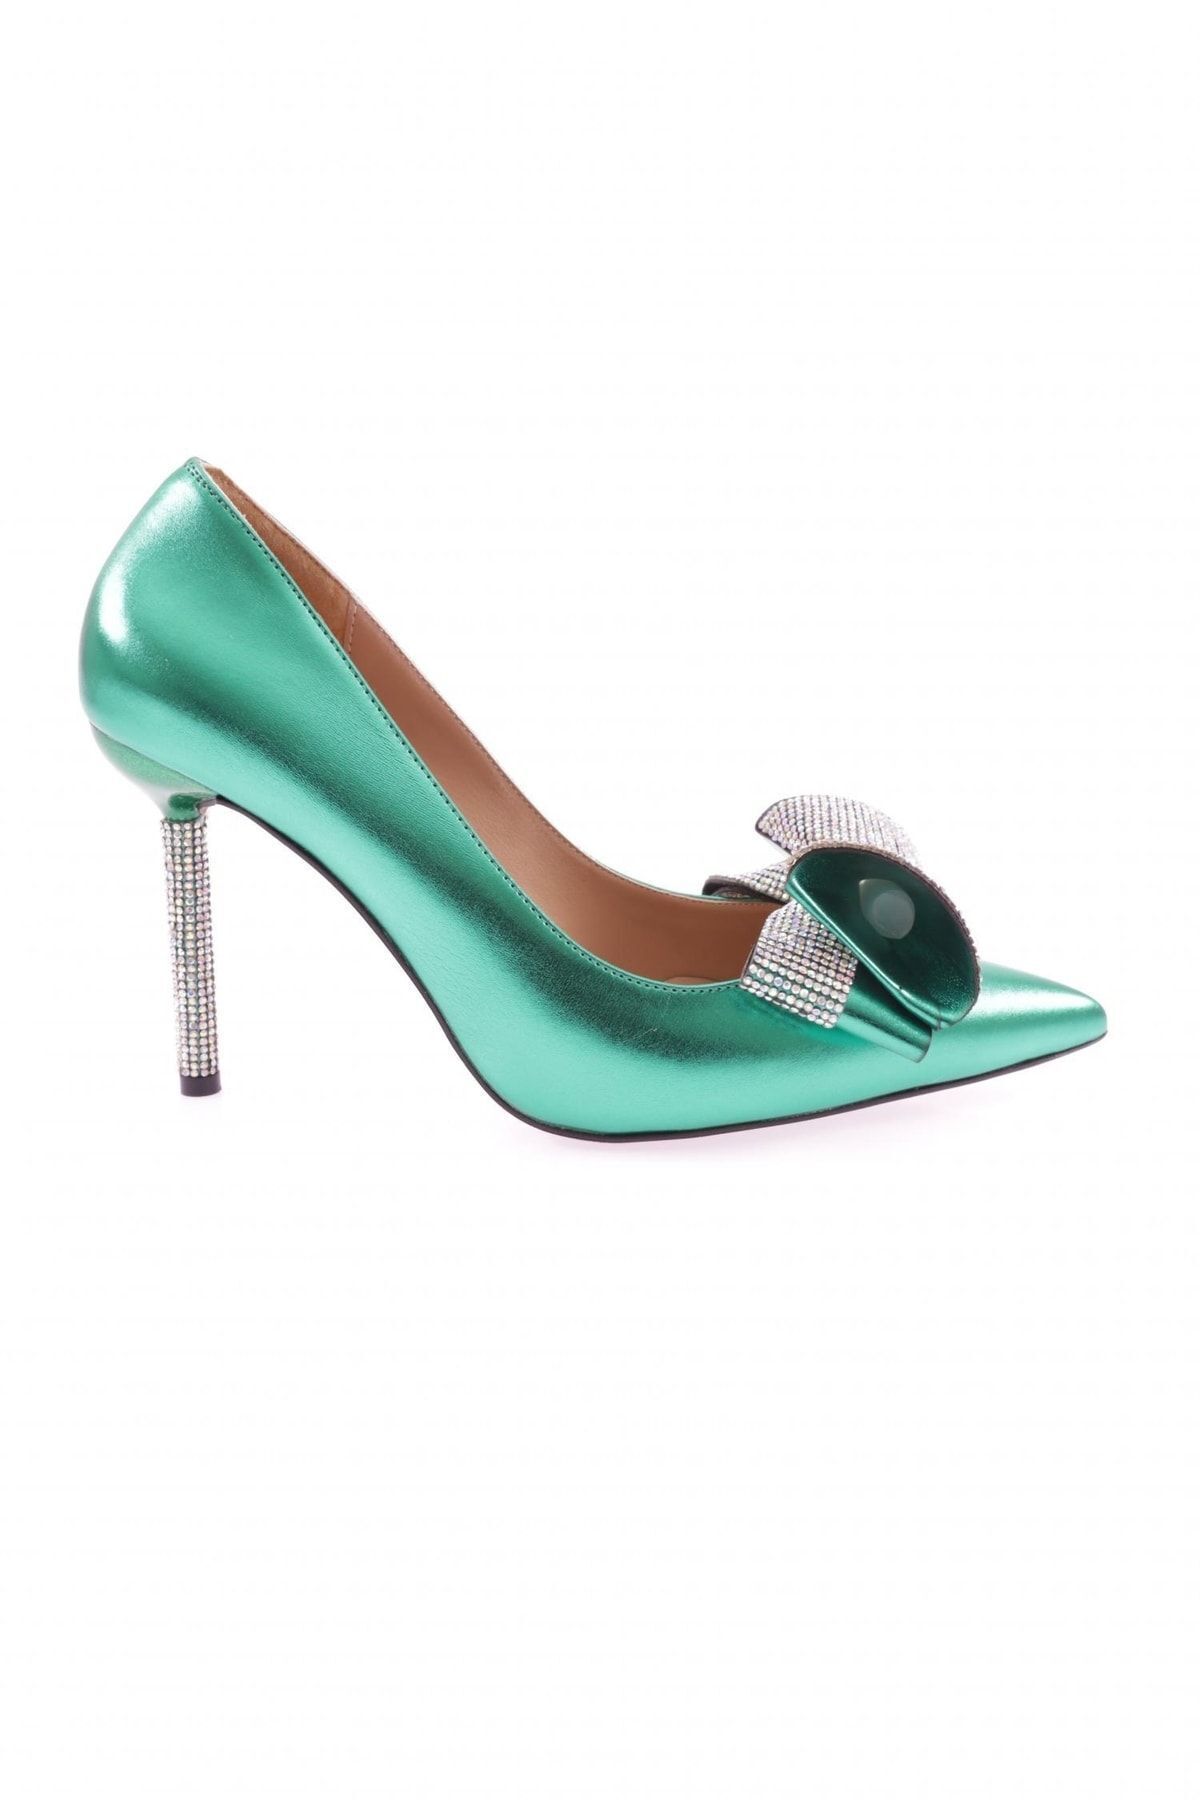 Dgn 5095-23y Kadın Topuklu Ayakkabı Yeşil Scuba